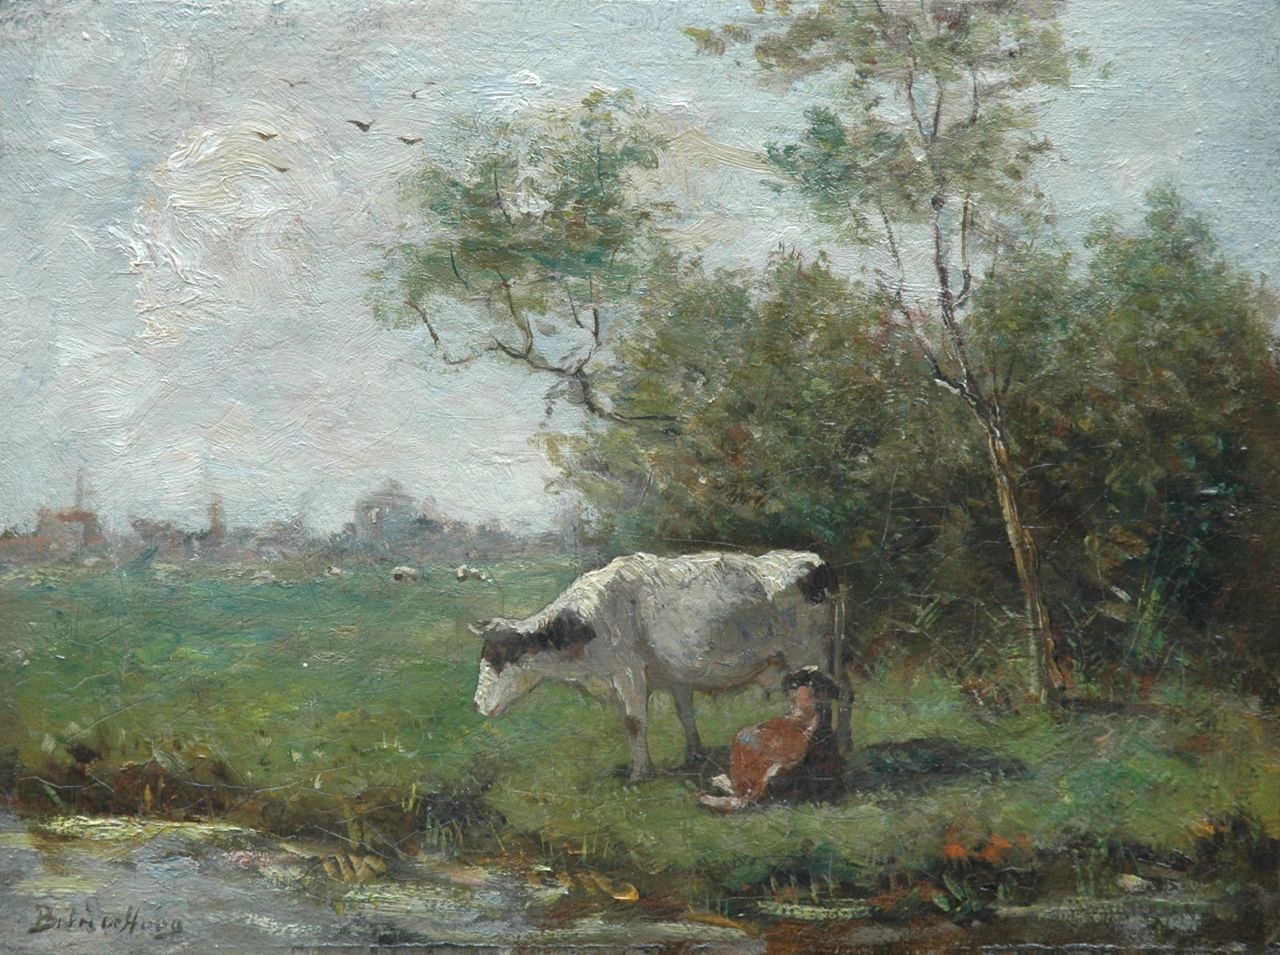 Hoog J.B. de | Johan 'Bernard' de Hoog, Cow and calf in a meadow, oil on canvas 25.8 x 34.4 cm, signed l.l.